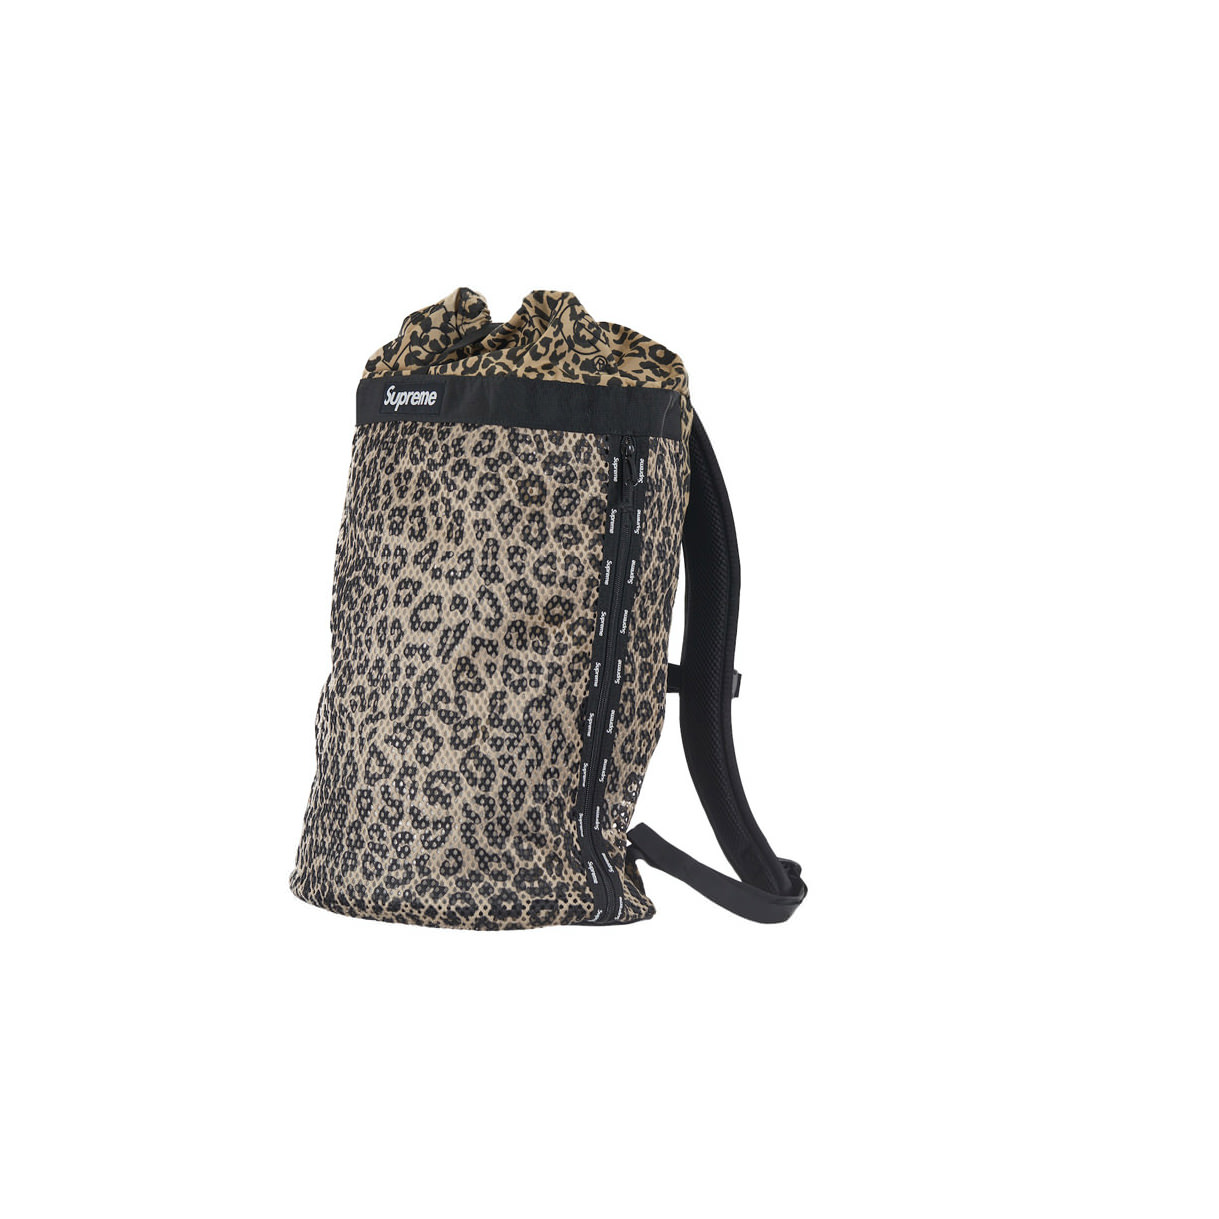 Supreme Mesh Backpack LeopardSupreme Mesh Backpack Leopard - OFour